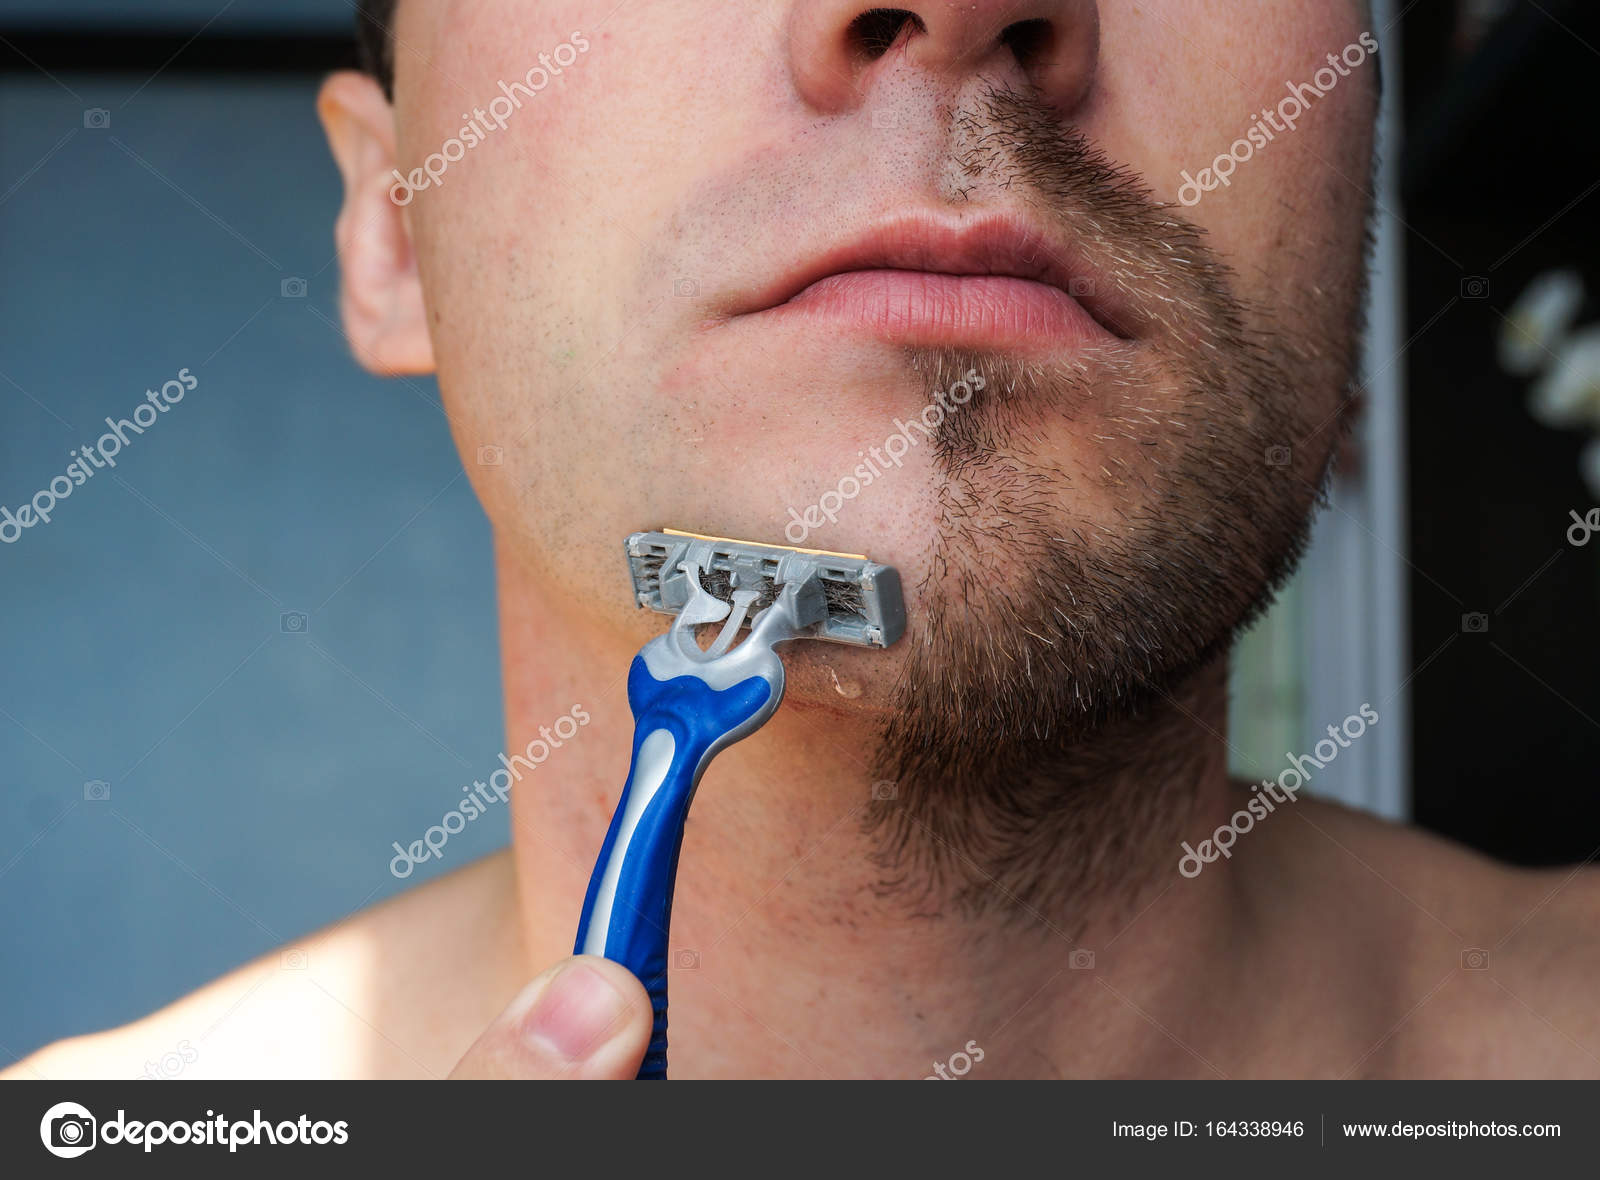 Shaving dick. Бритва для бороды одноразовая. Гладкое бритье для мужчин. Одноразовый станки для бороды. Направление бритья.